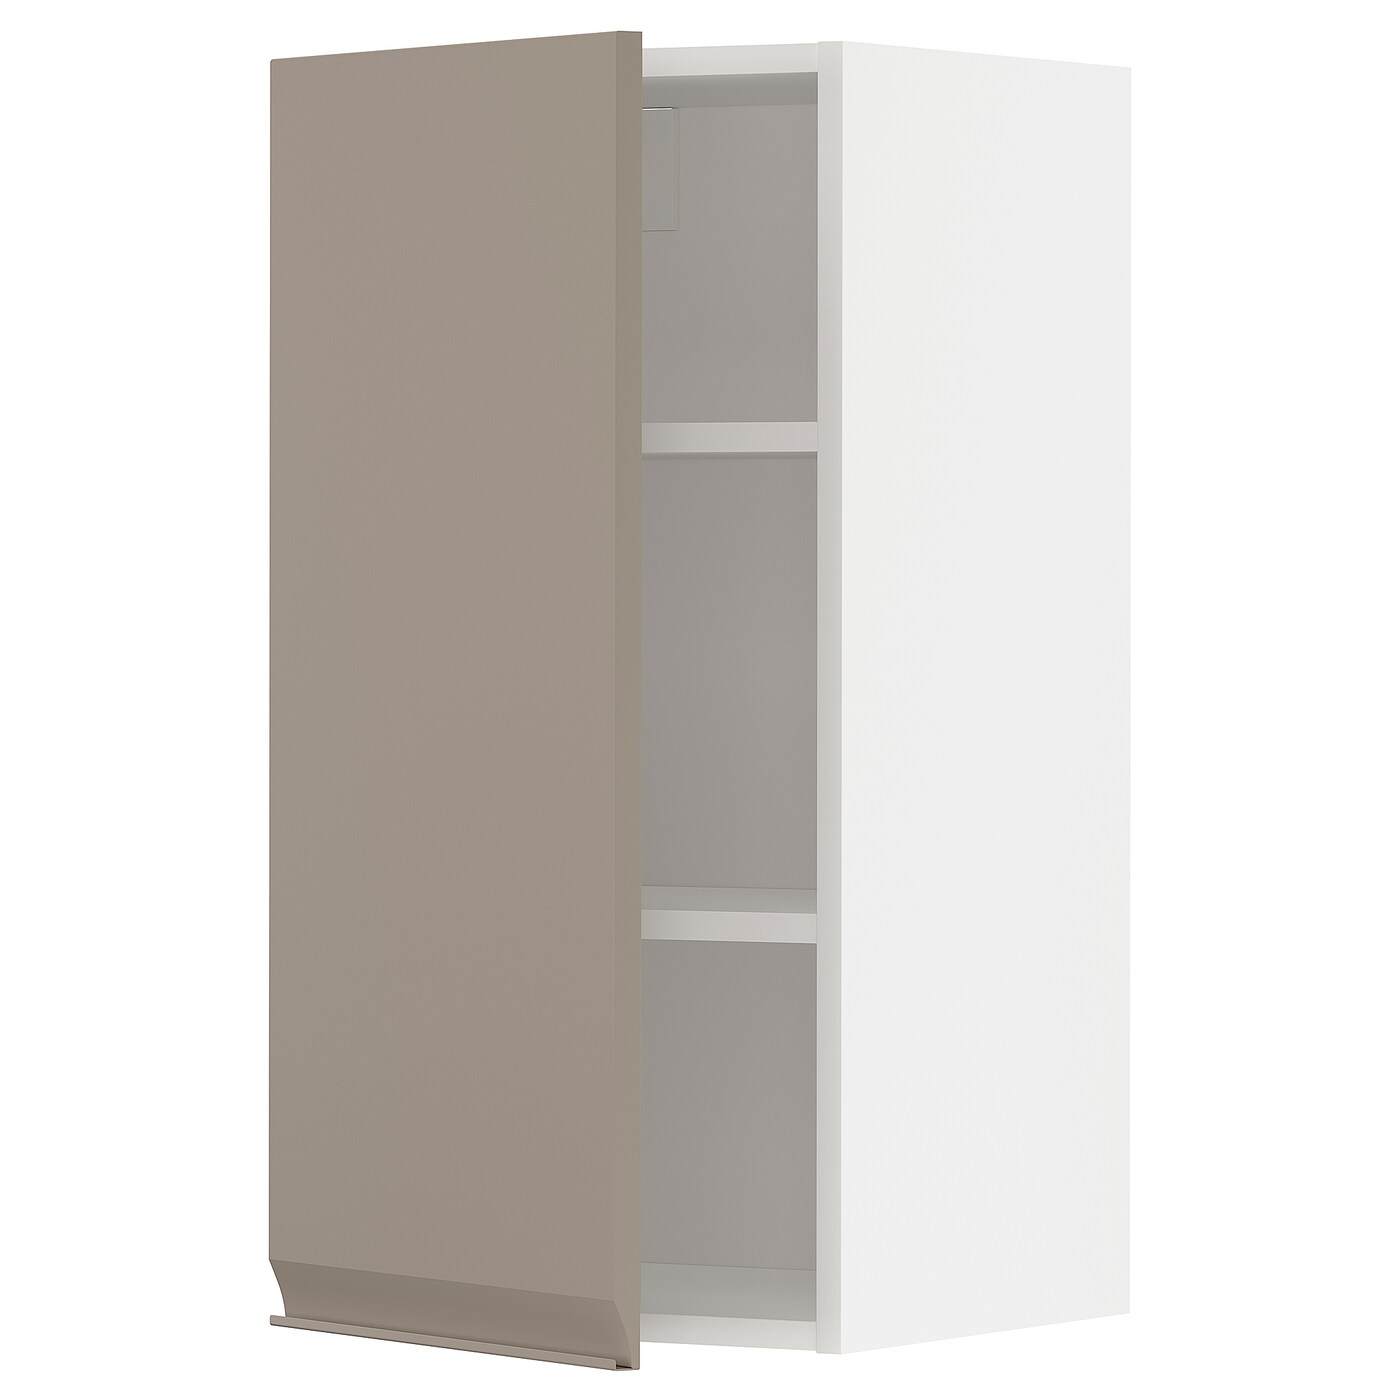 Навесной шкаф с полкой - METOD IKEA/ МЕТОД ИКЕА, 80х40 см, белый/светло-коричневый